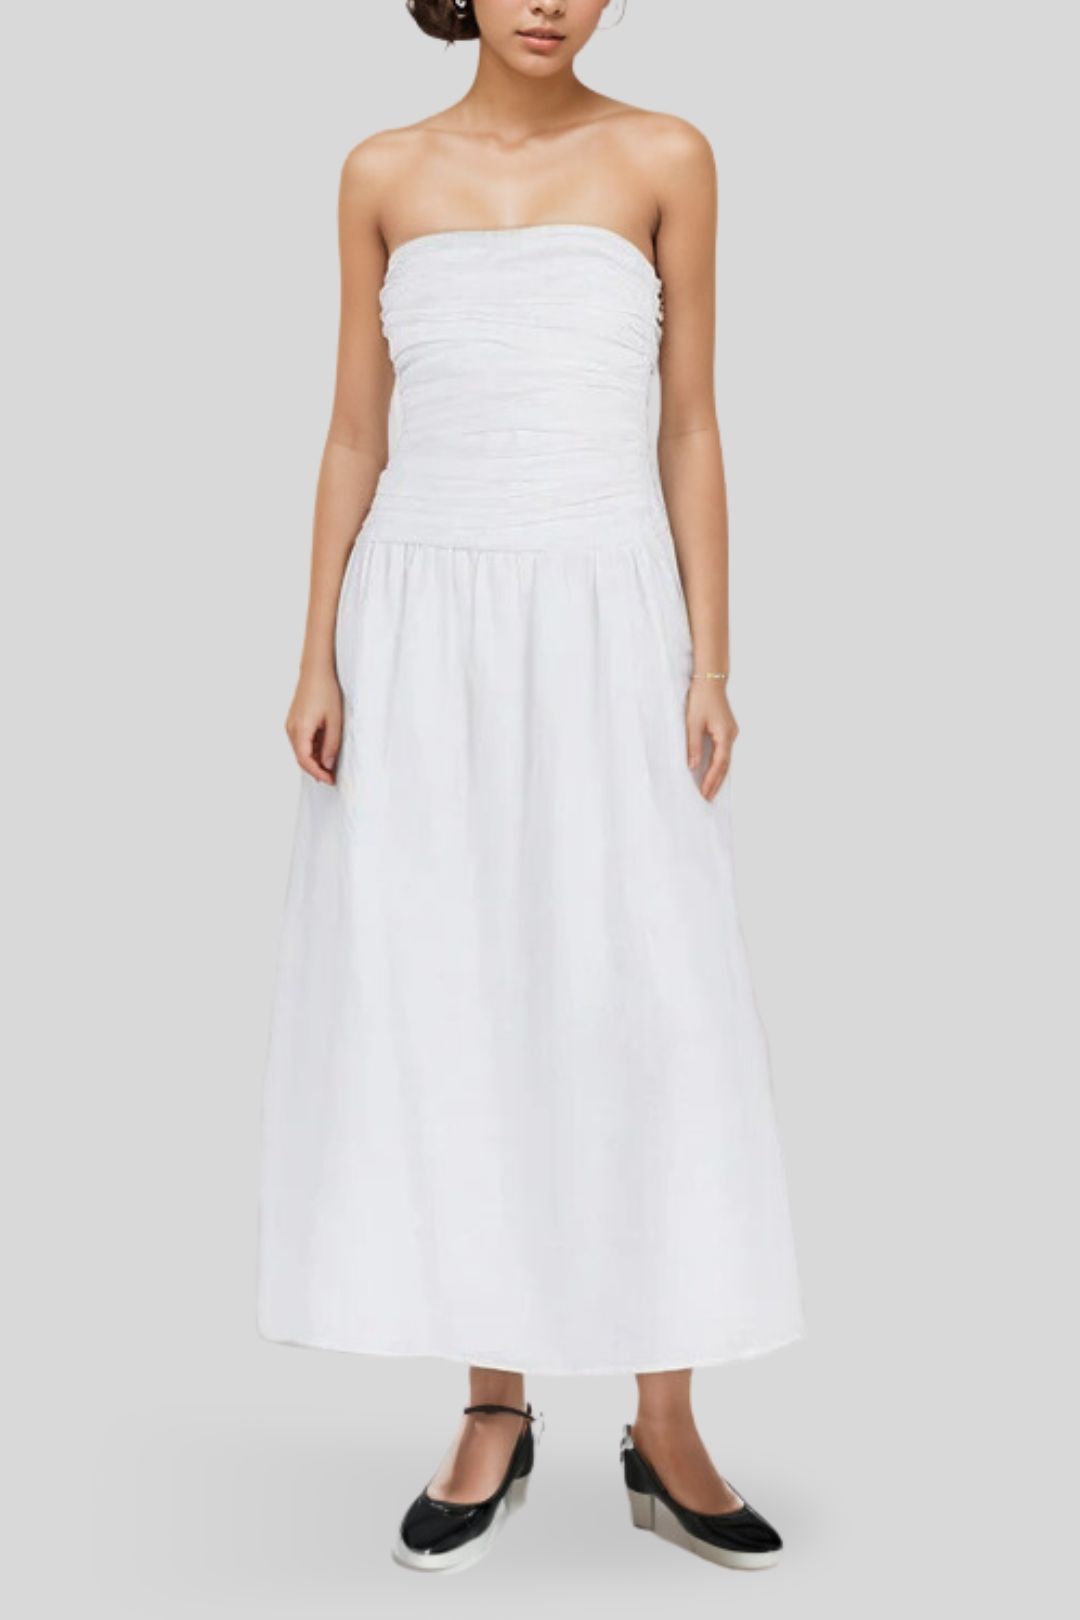 DISSH - Catania White Linen Strapless Dress